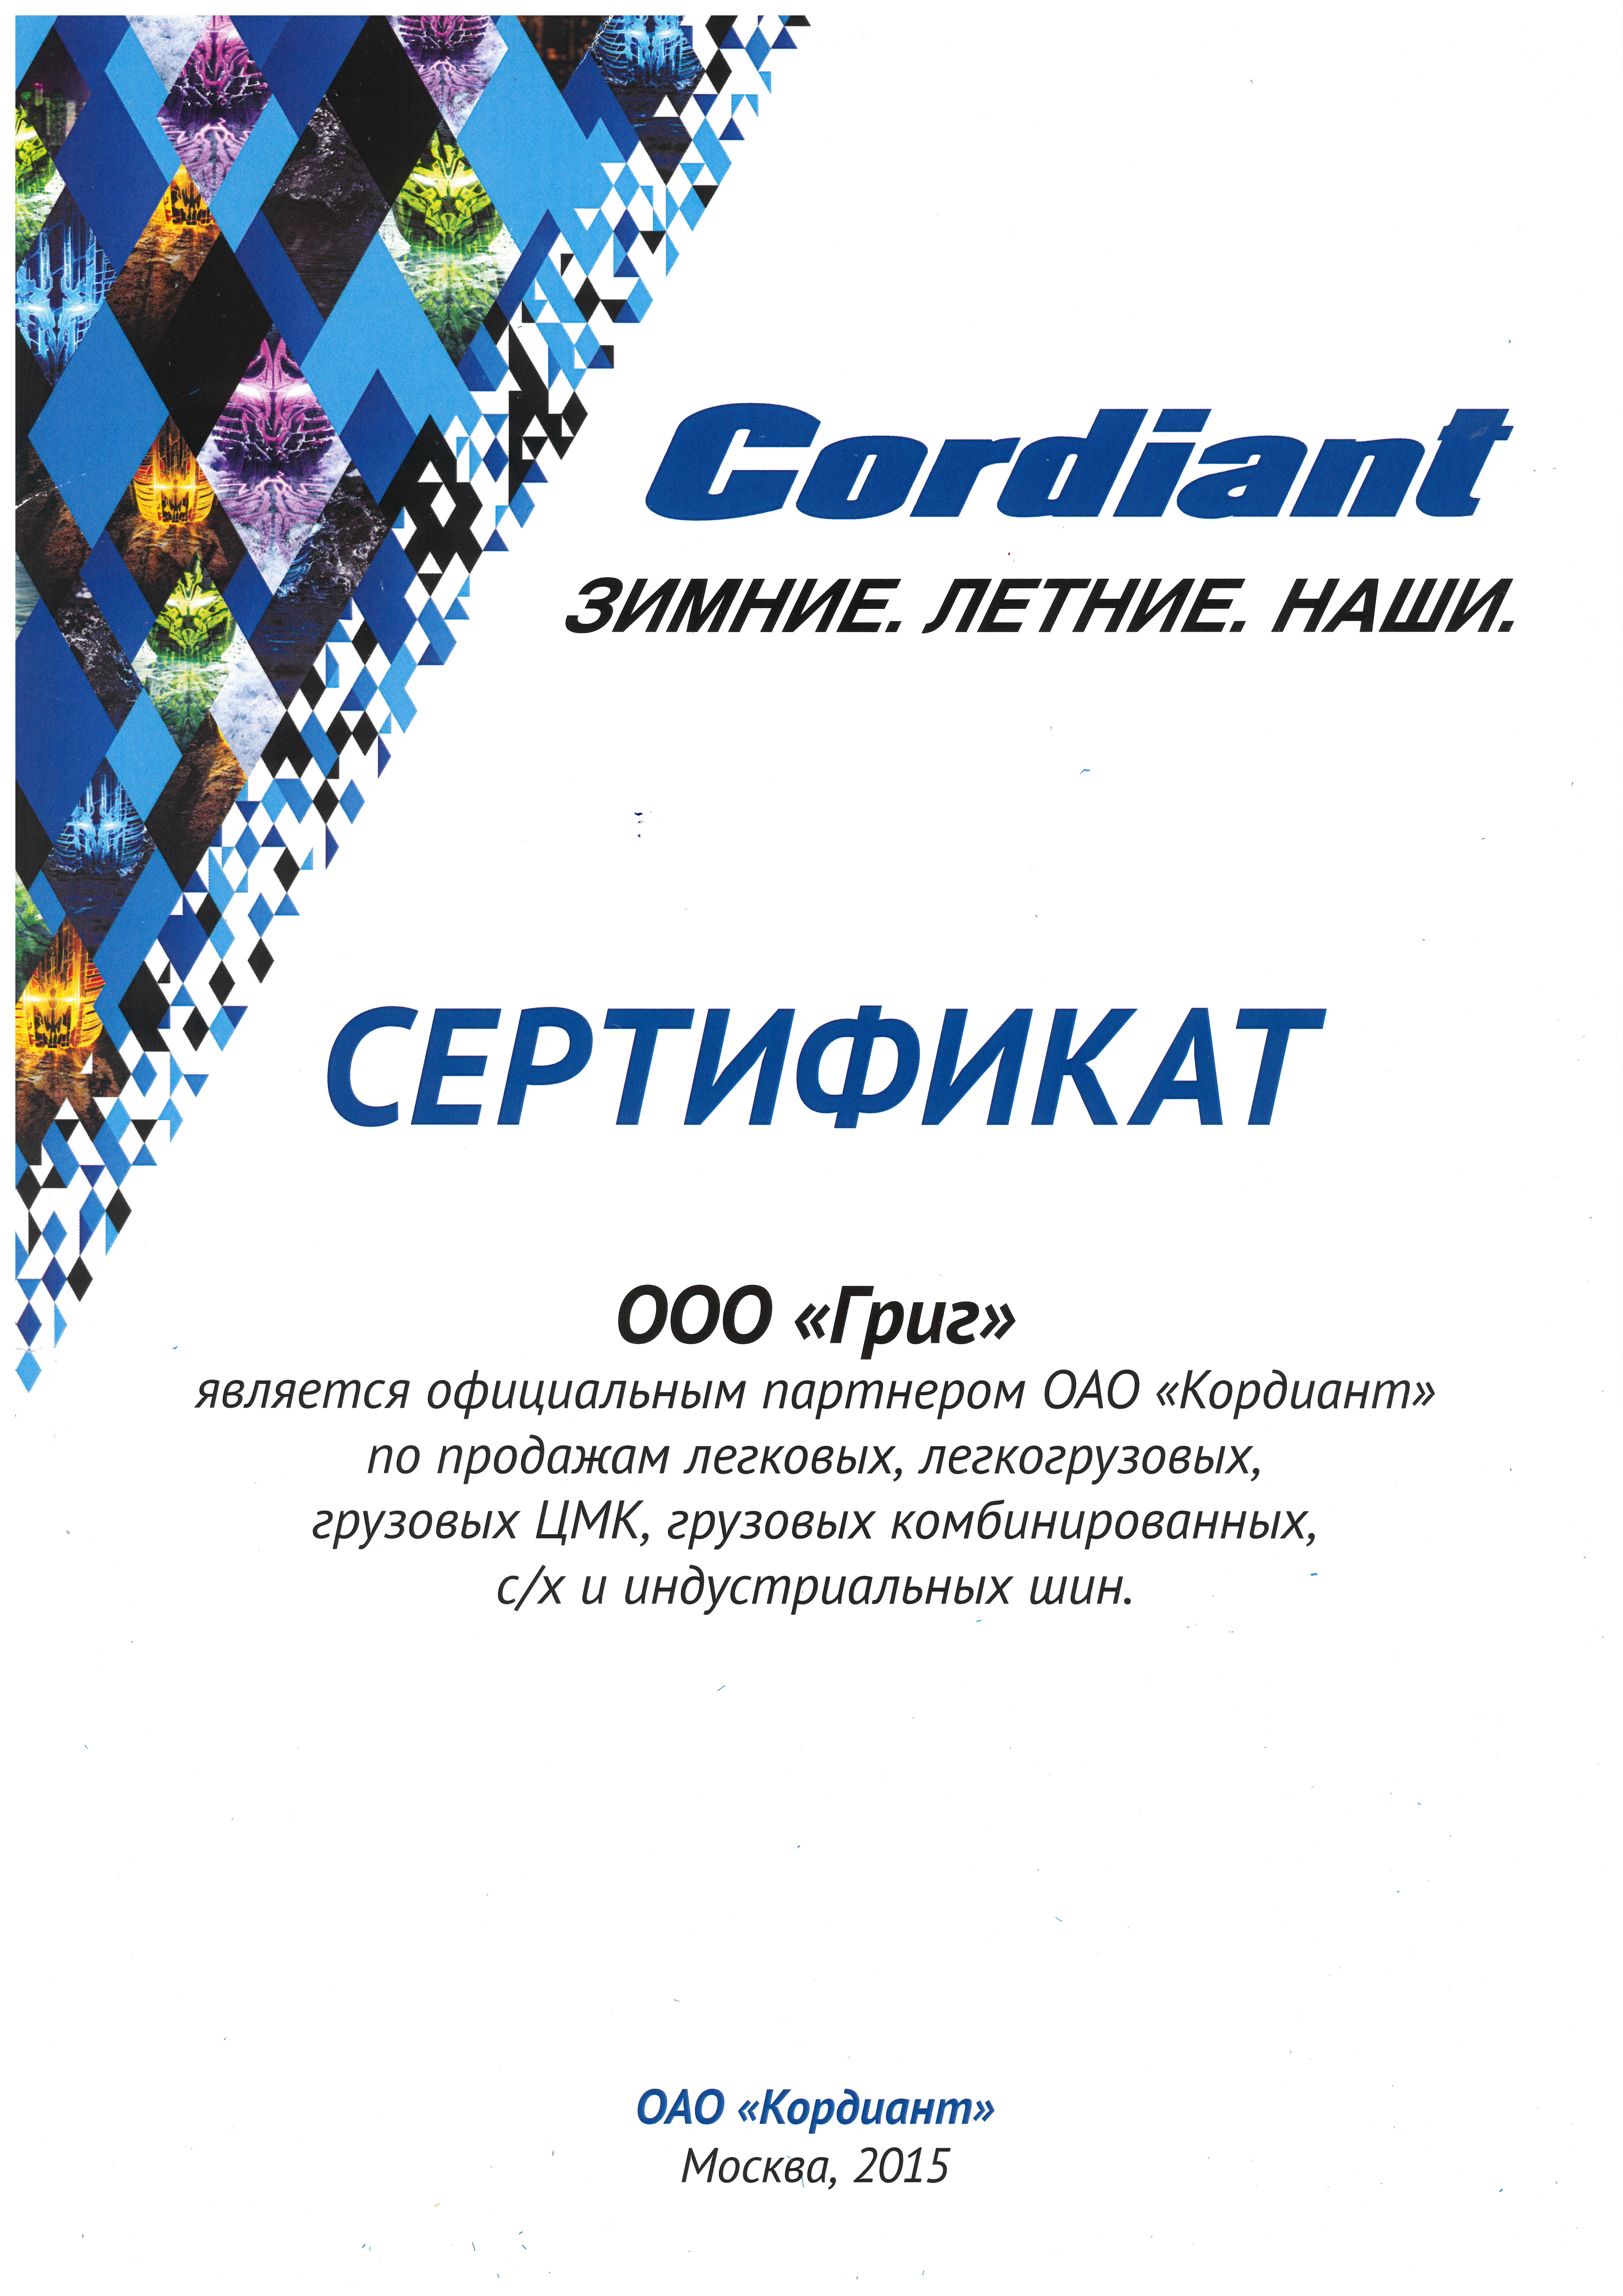 Официальный партнер ОАО "Кордиант" 2015